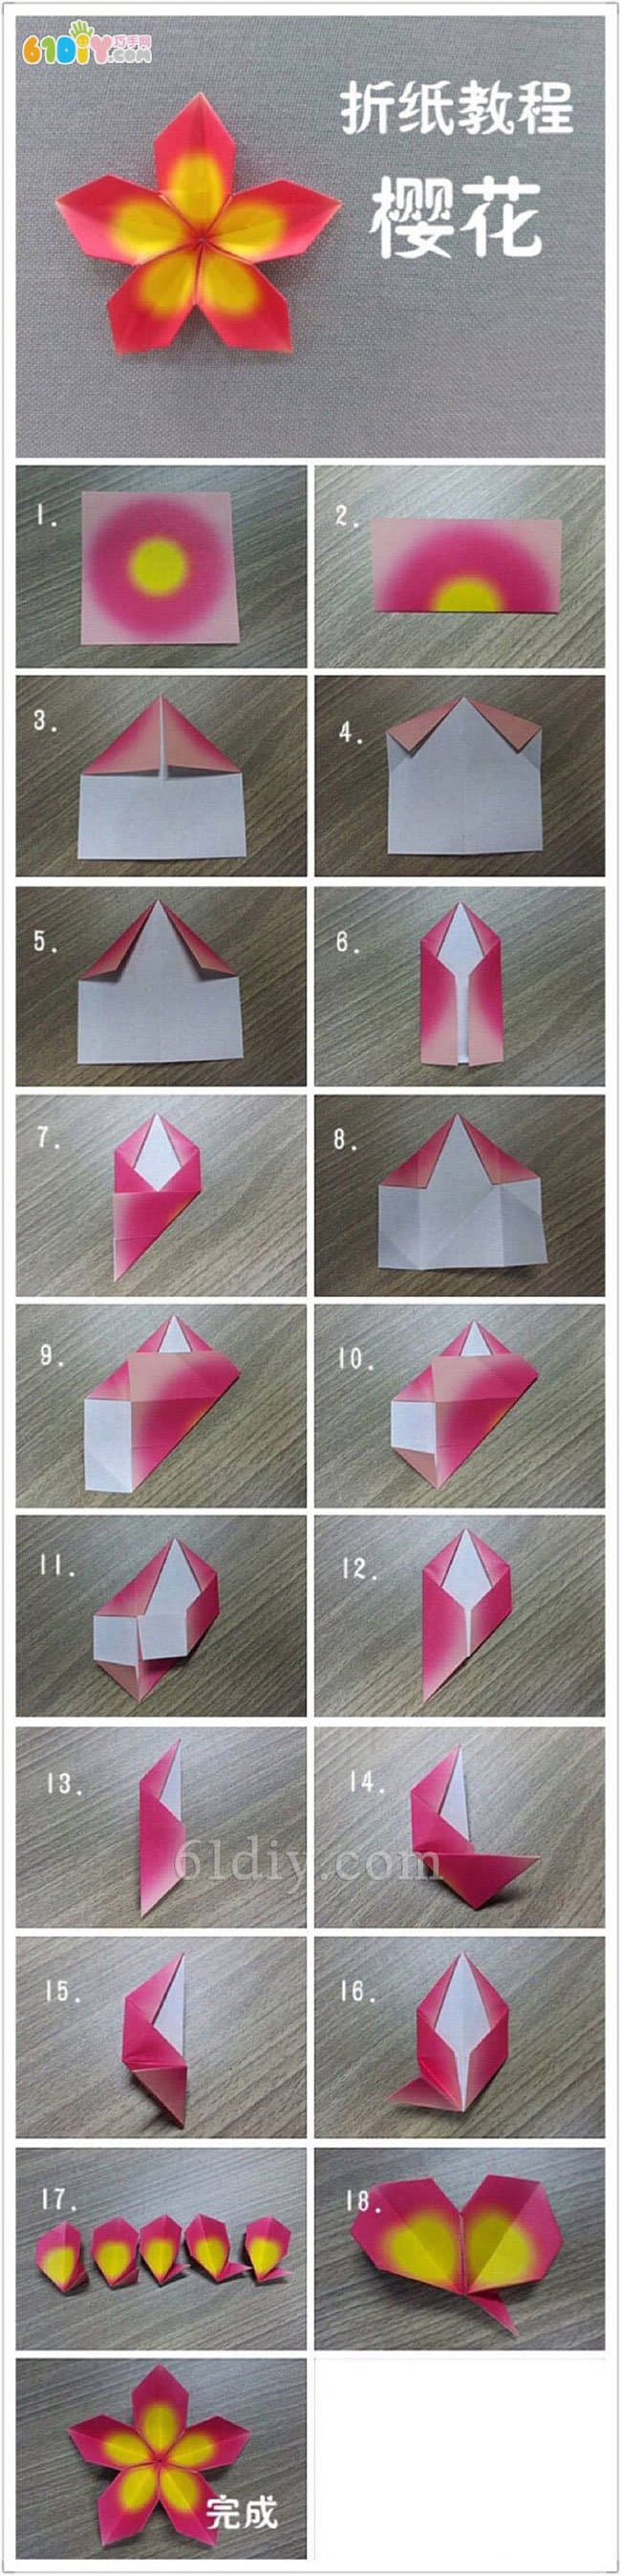 樱花折纸图解教程